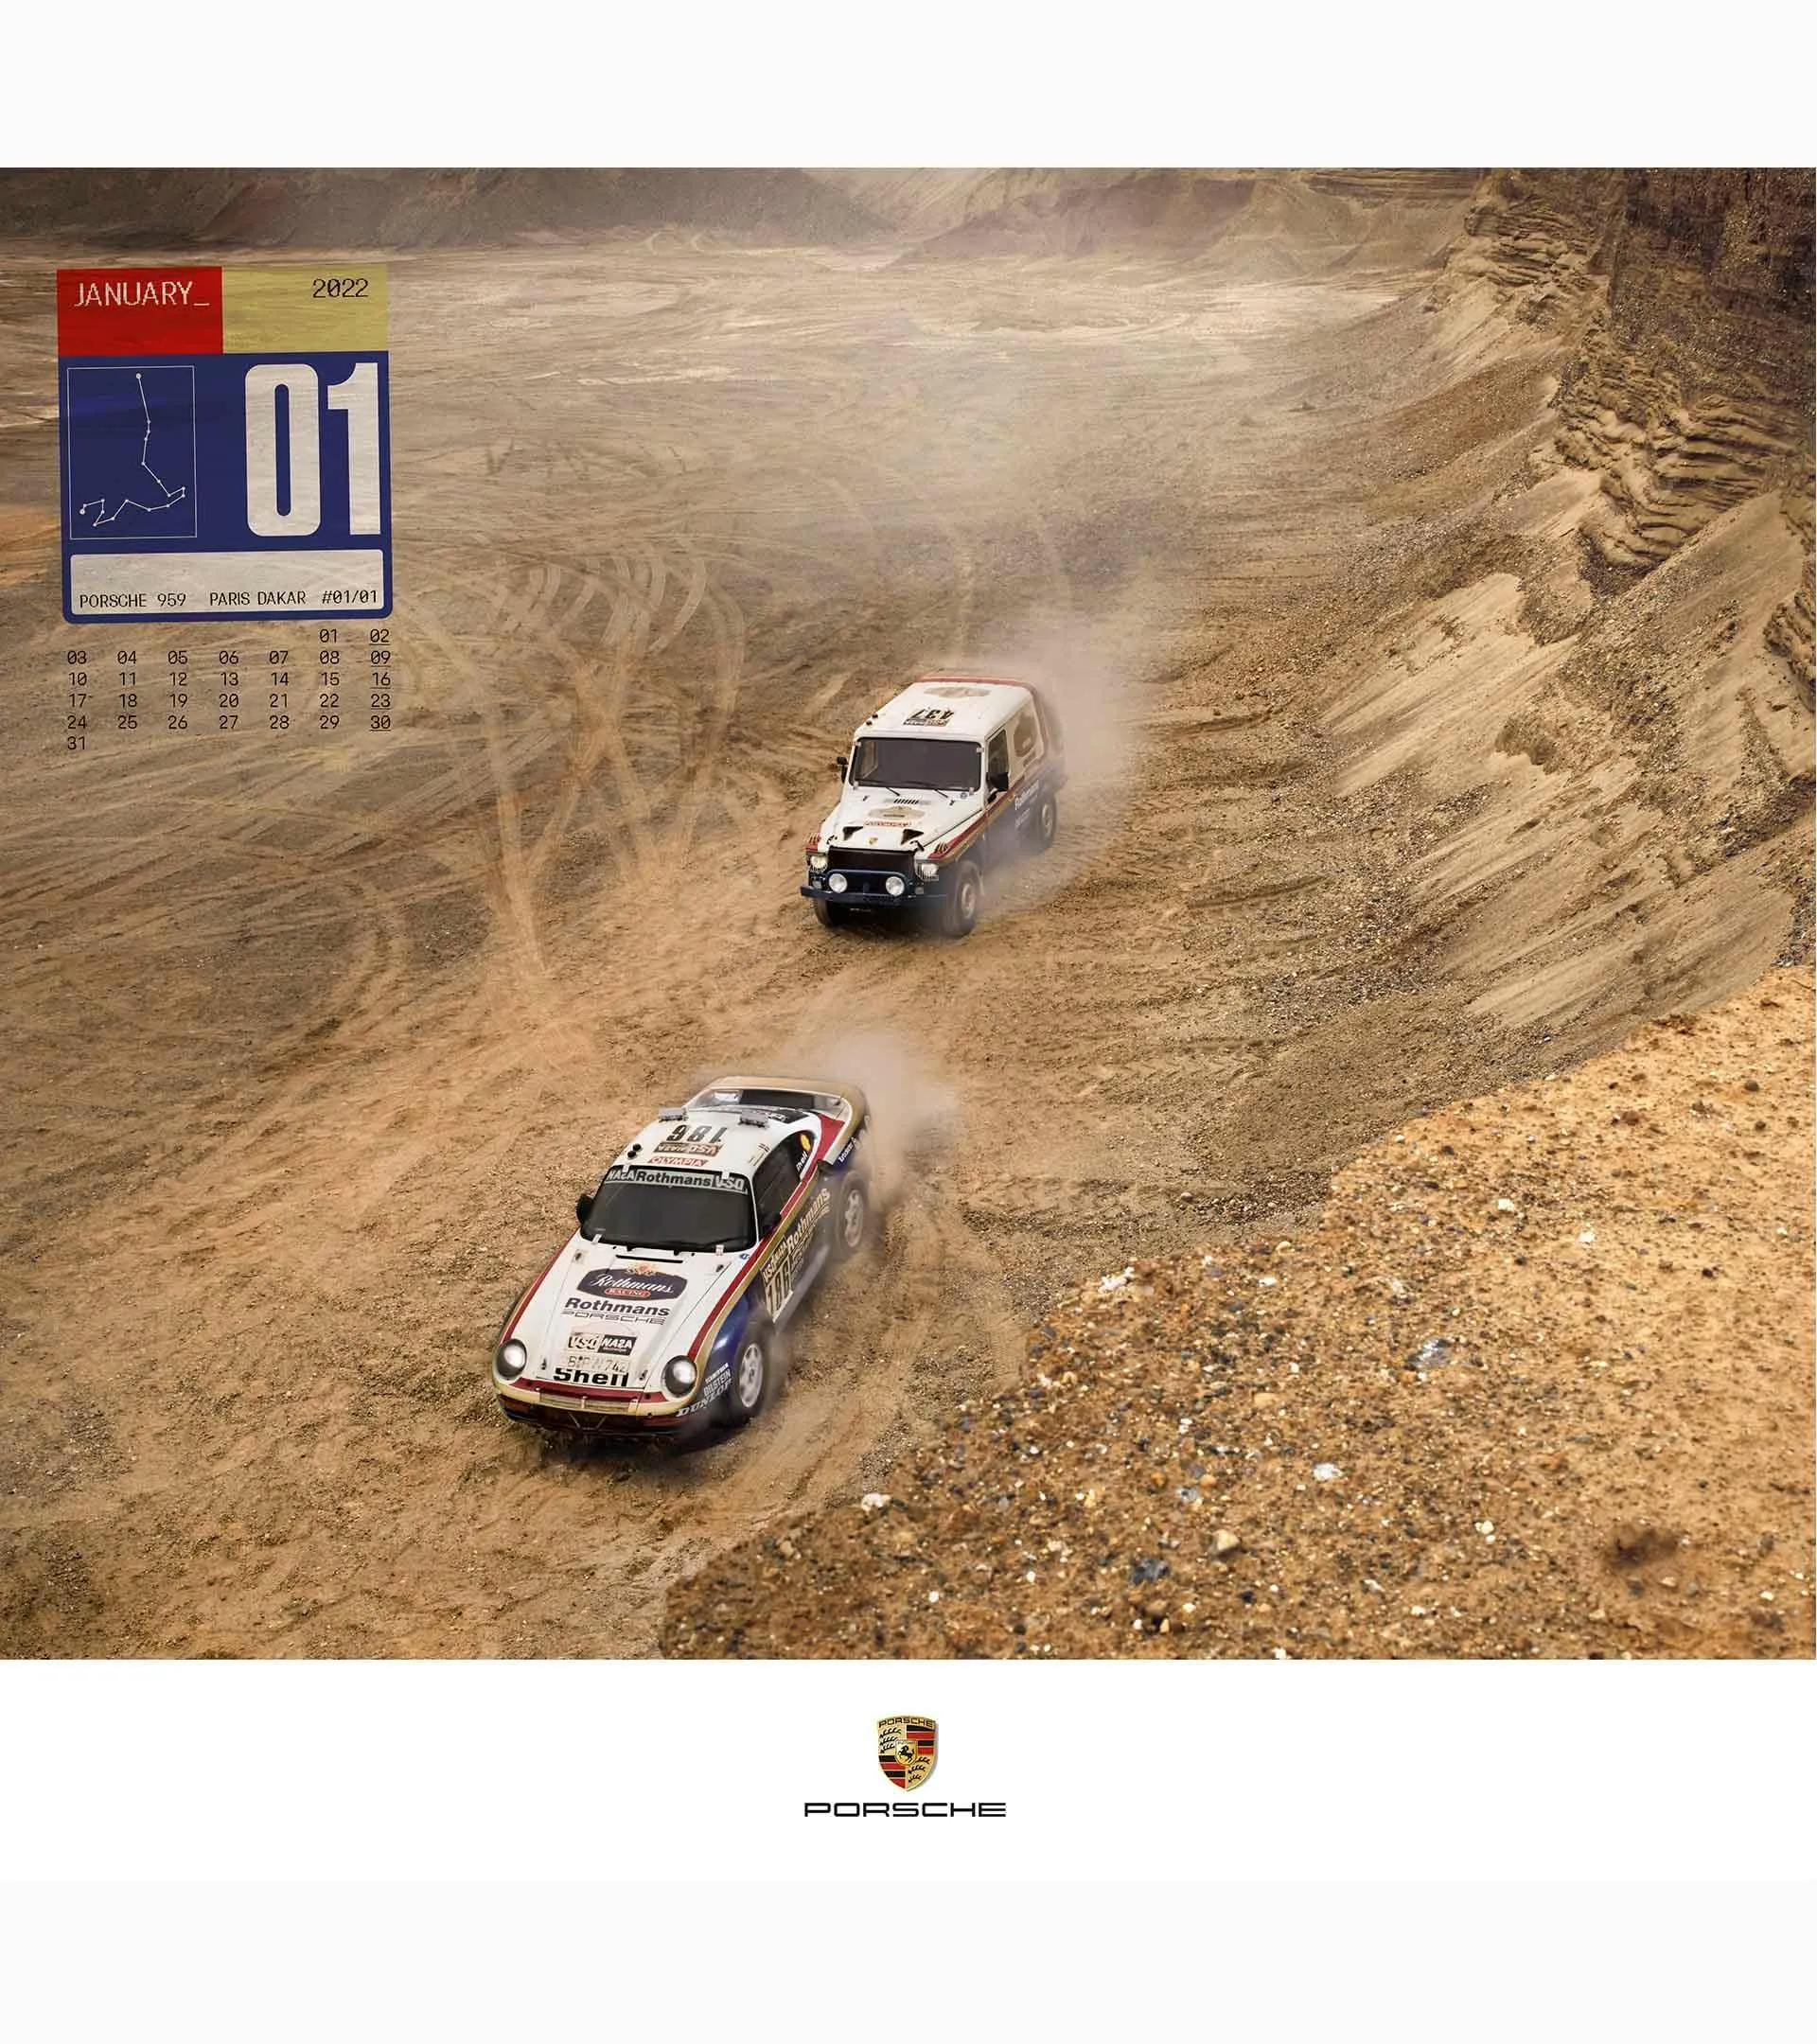 Calendario de Porsche 2022: "One of 1" 2